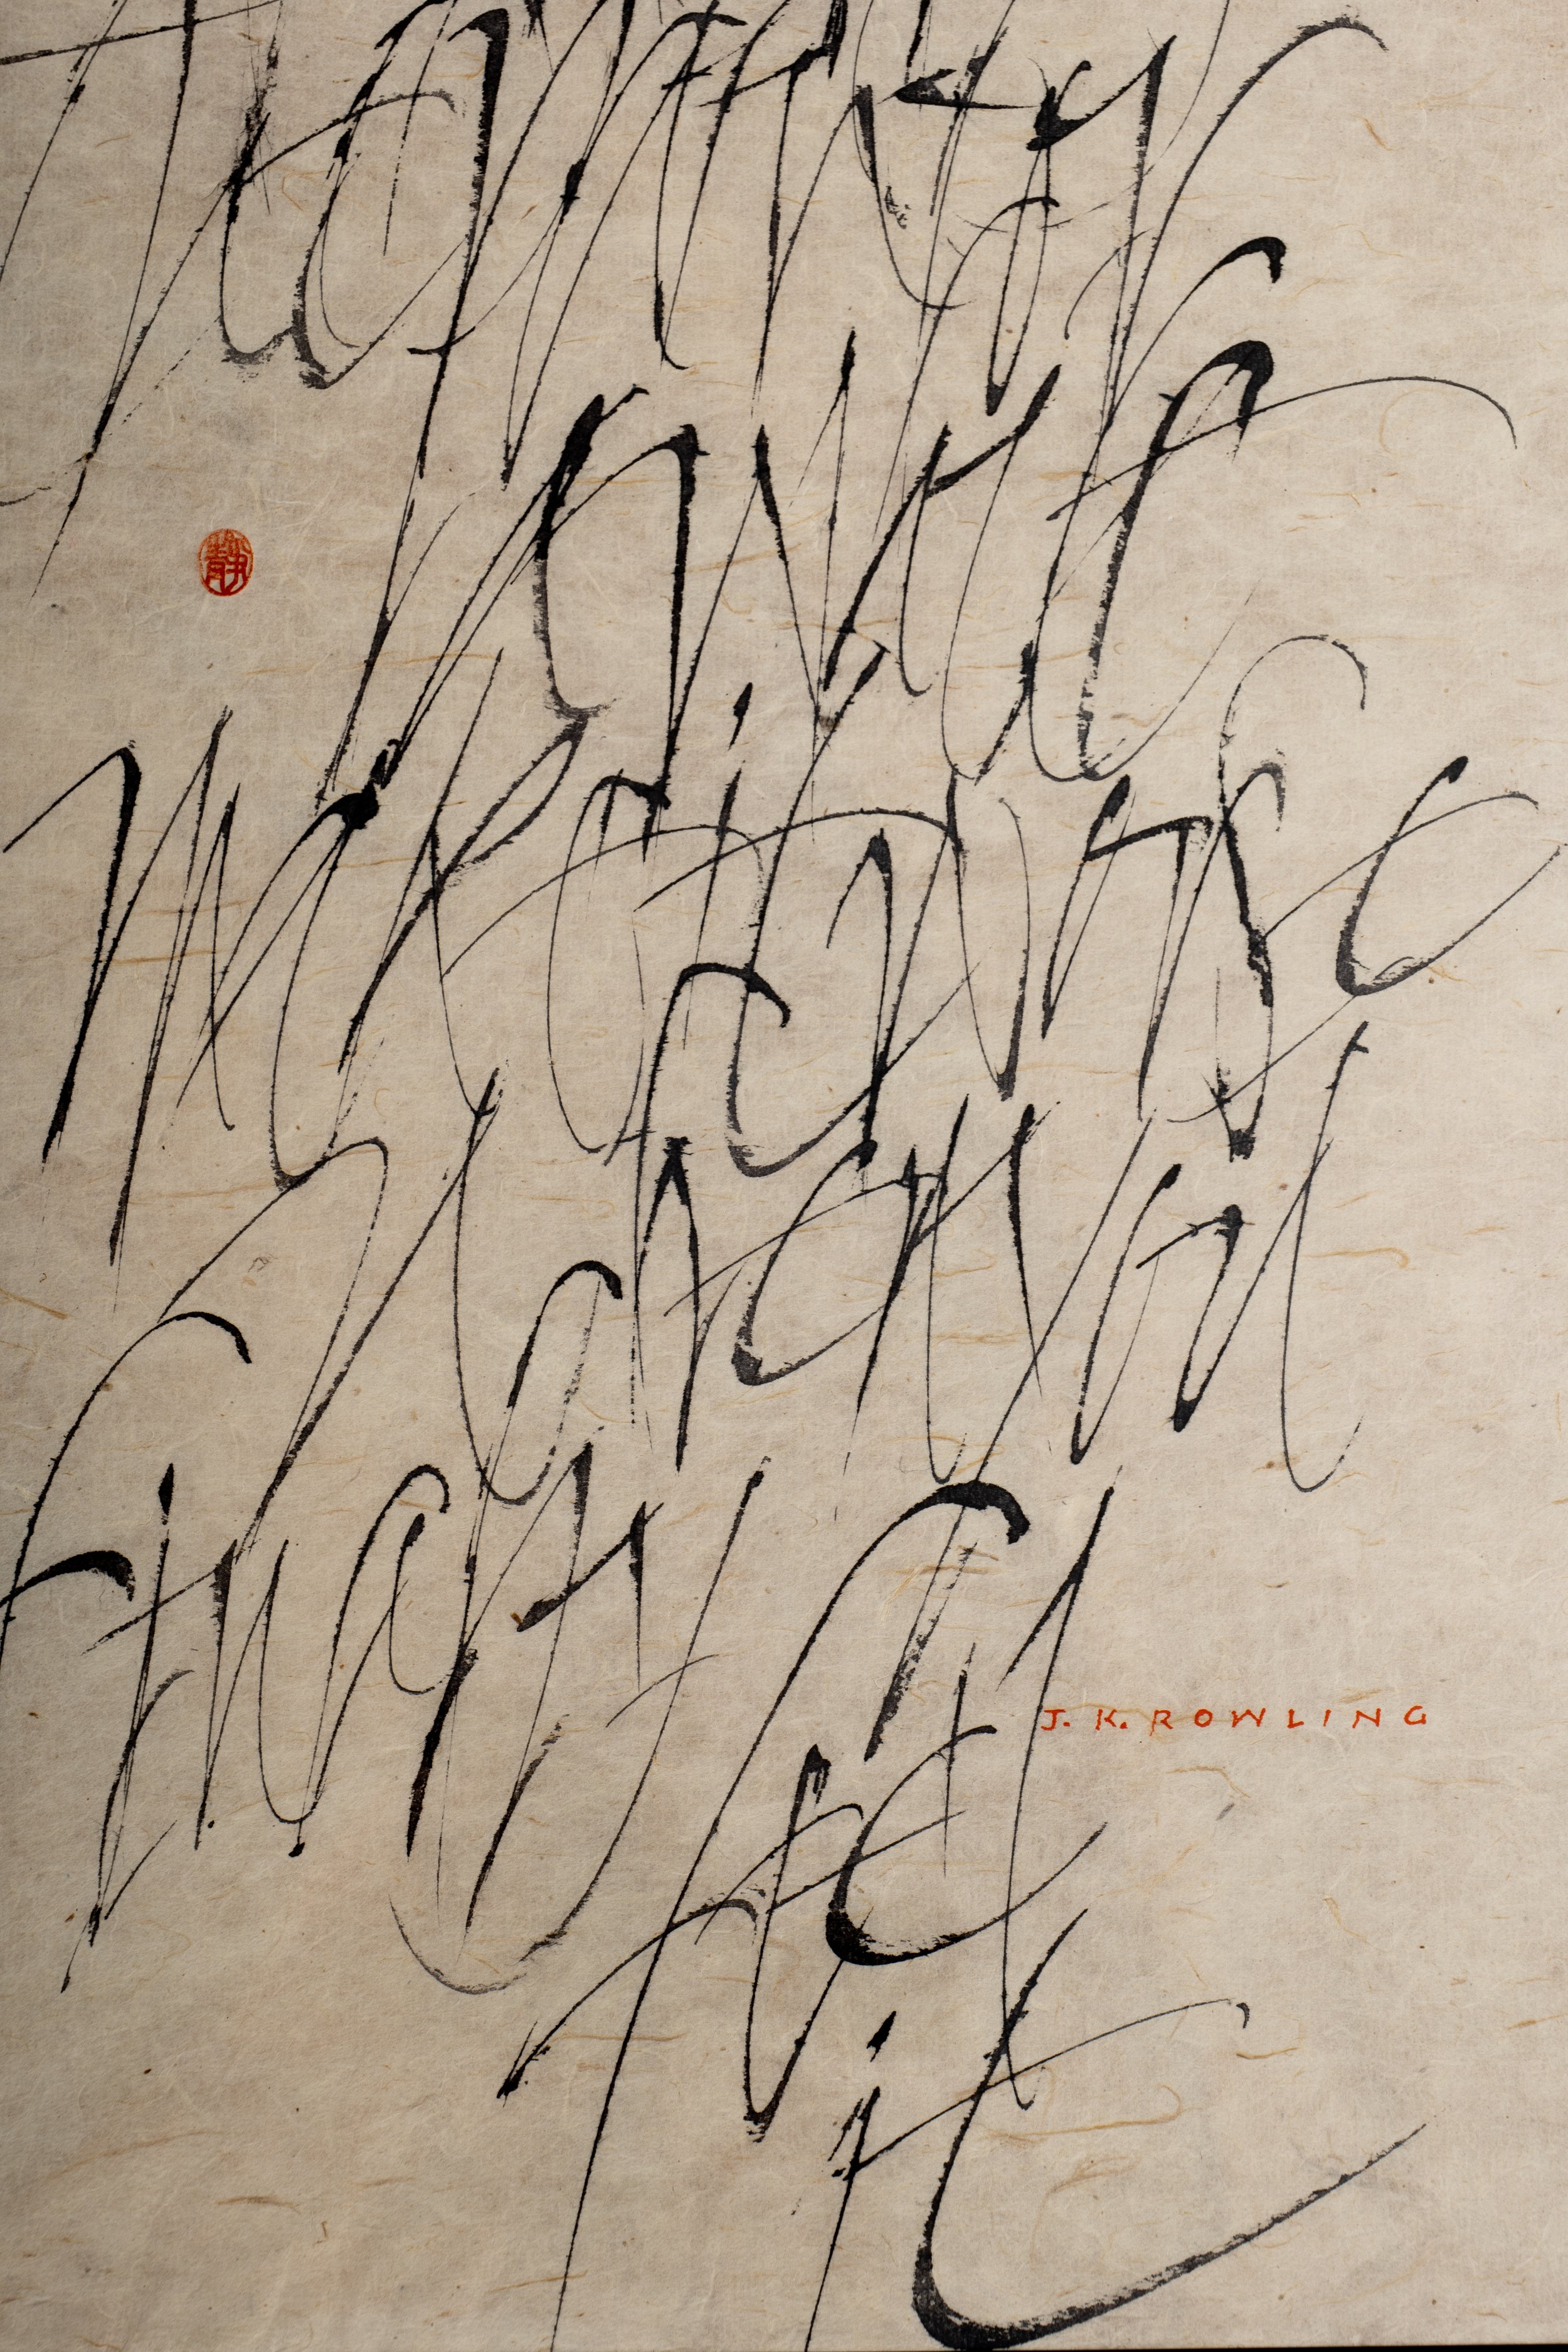 calligraphy-artwork-dao-huy-hoang-16.jpg